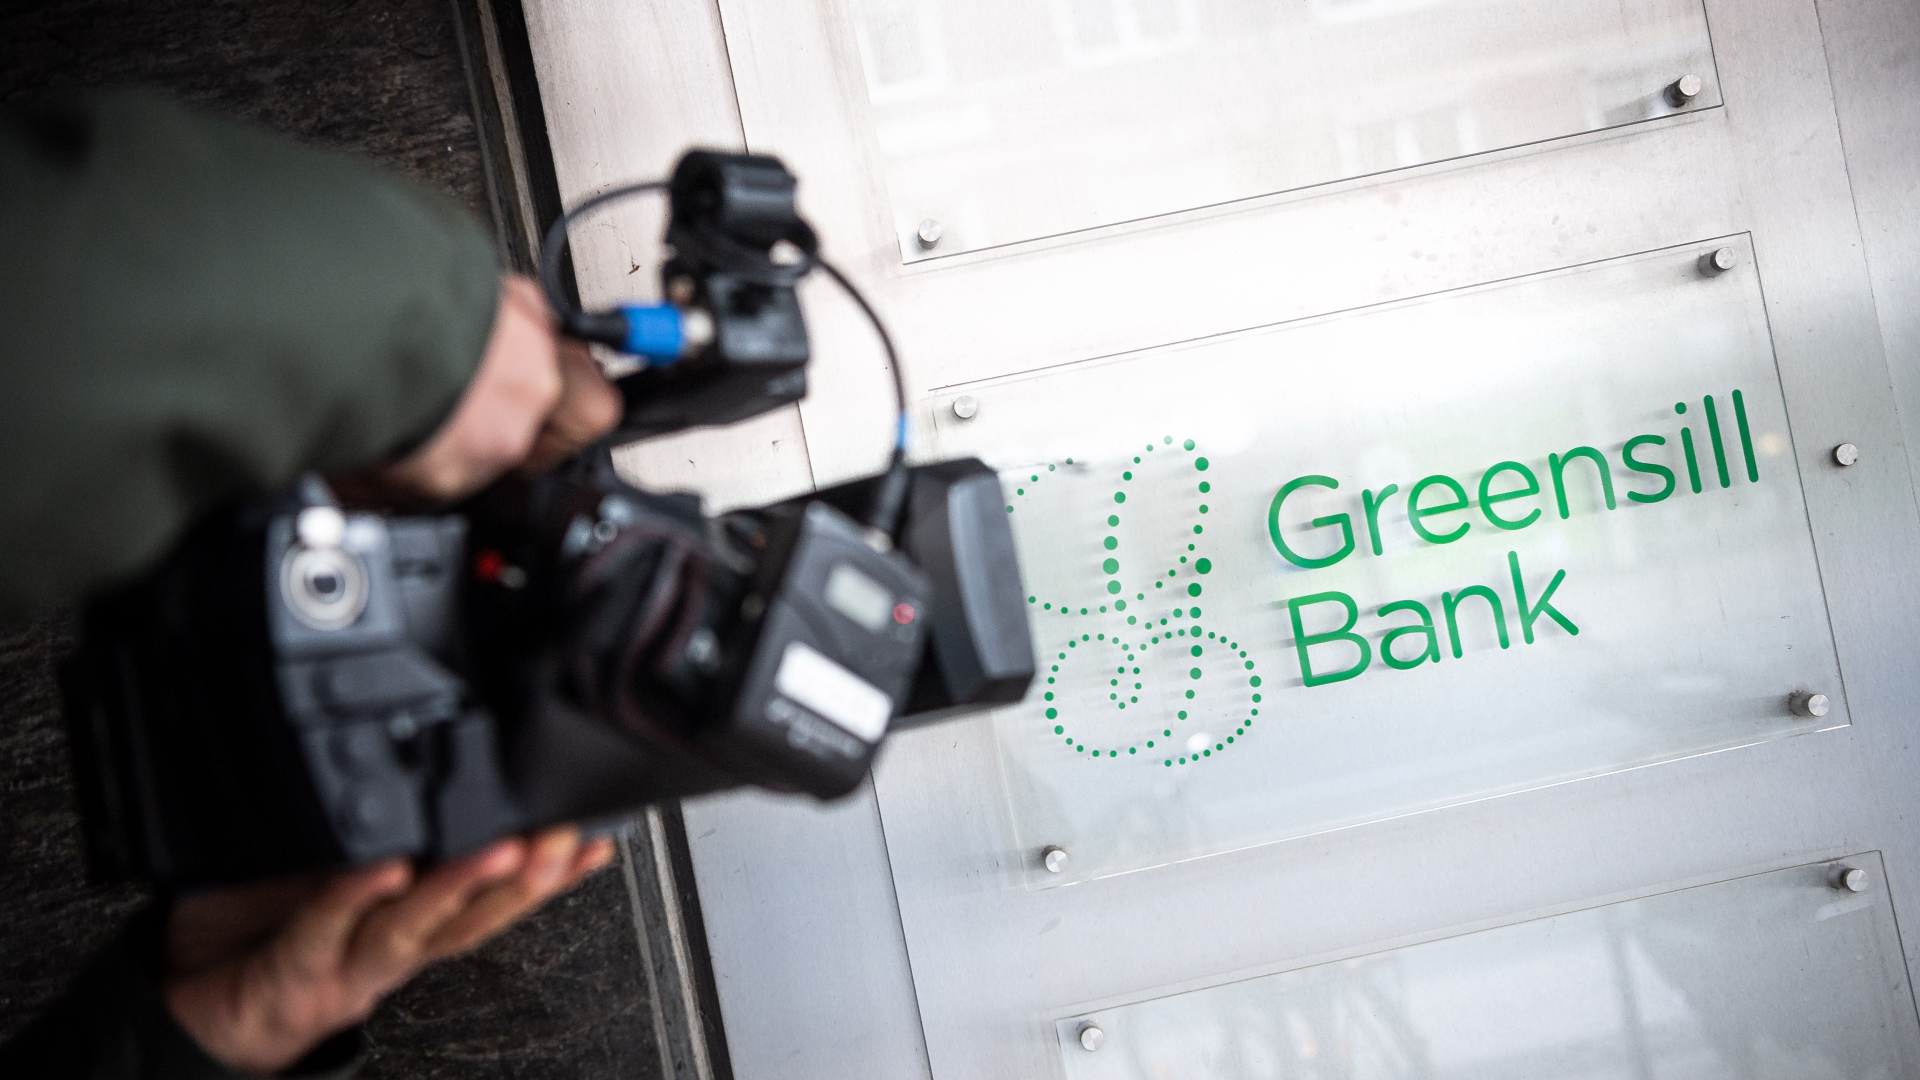 Ein Schild mit dem Firmennamen "Greensill Bank" wird von einem Fernsehteam gefilmt. | Foto: picture alliance/dpa | Sina Schuldt